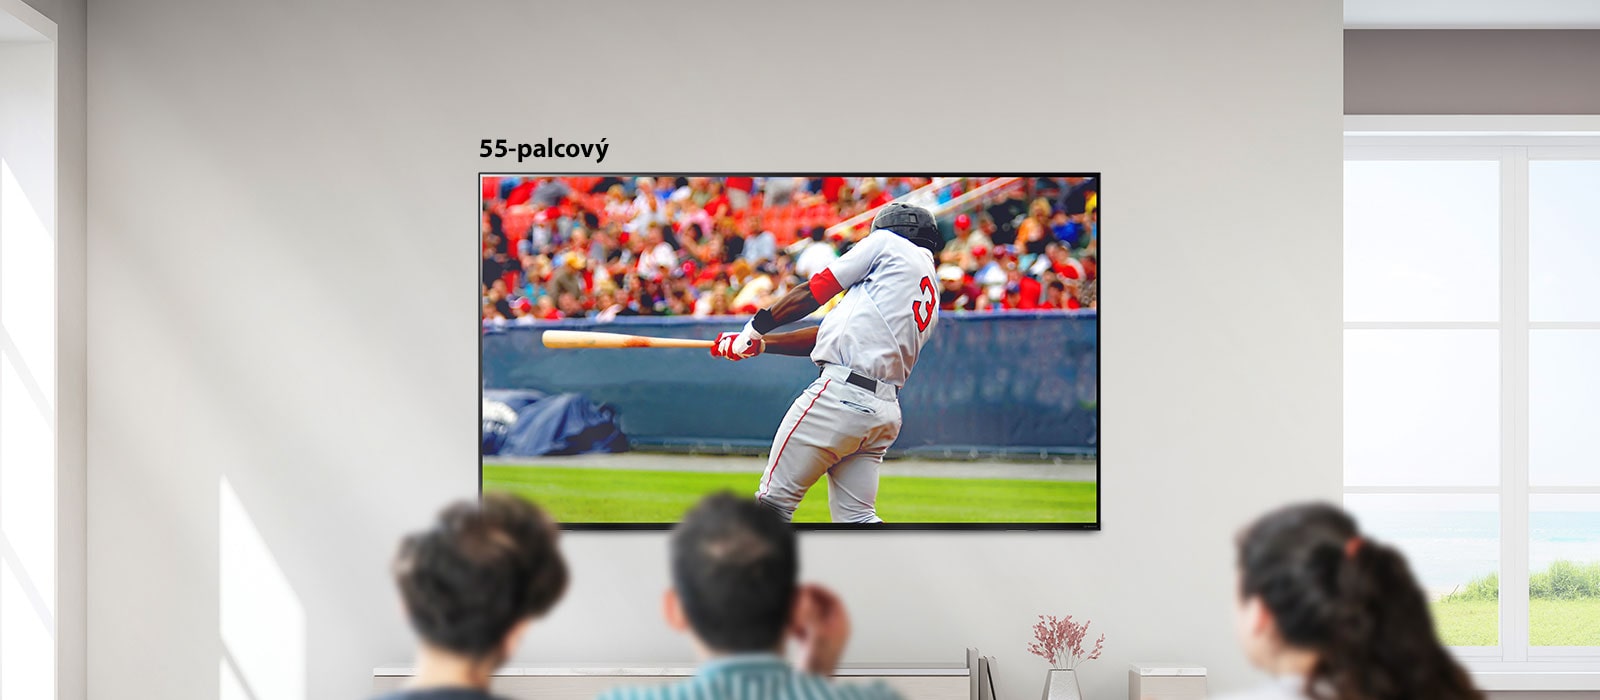 Posúvateľný obraz troch ľudí sledujúcich bejzbalový zápas na veľkom televízore osadenom na stene. Pri posúvaní zľava doprava sa obrazovka zväčšuje.